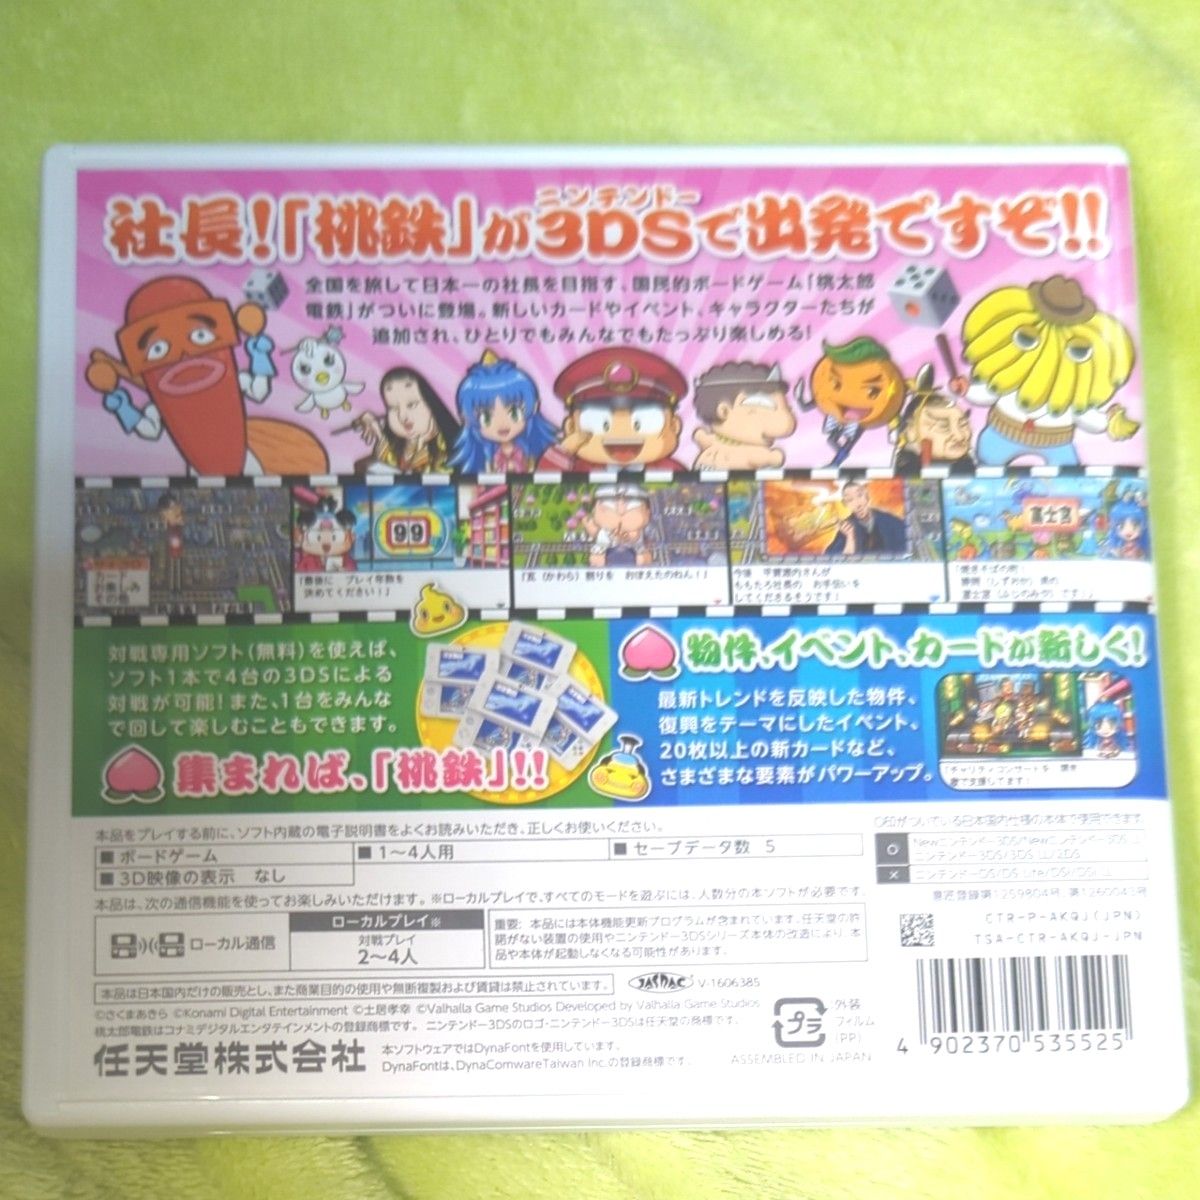 【桃鉄】 桃太郎電鉄 2017 たちあがれ日本 3DSソフト